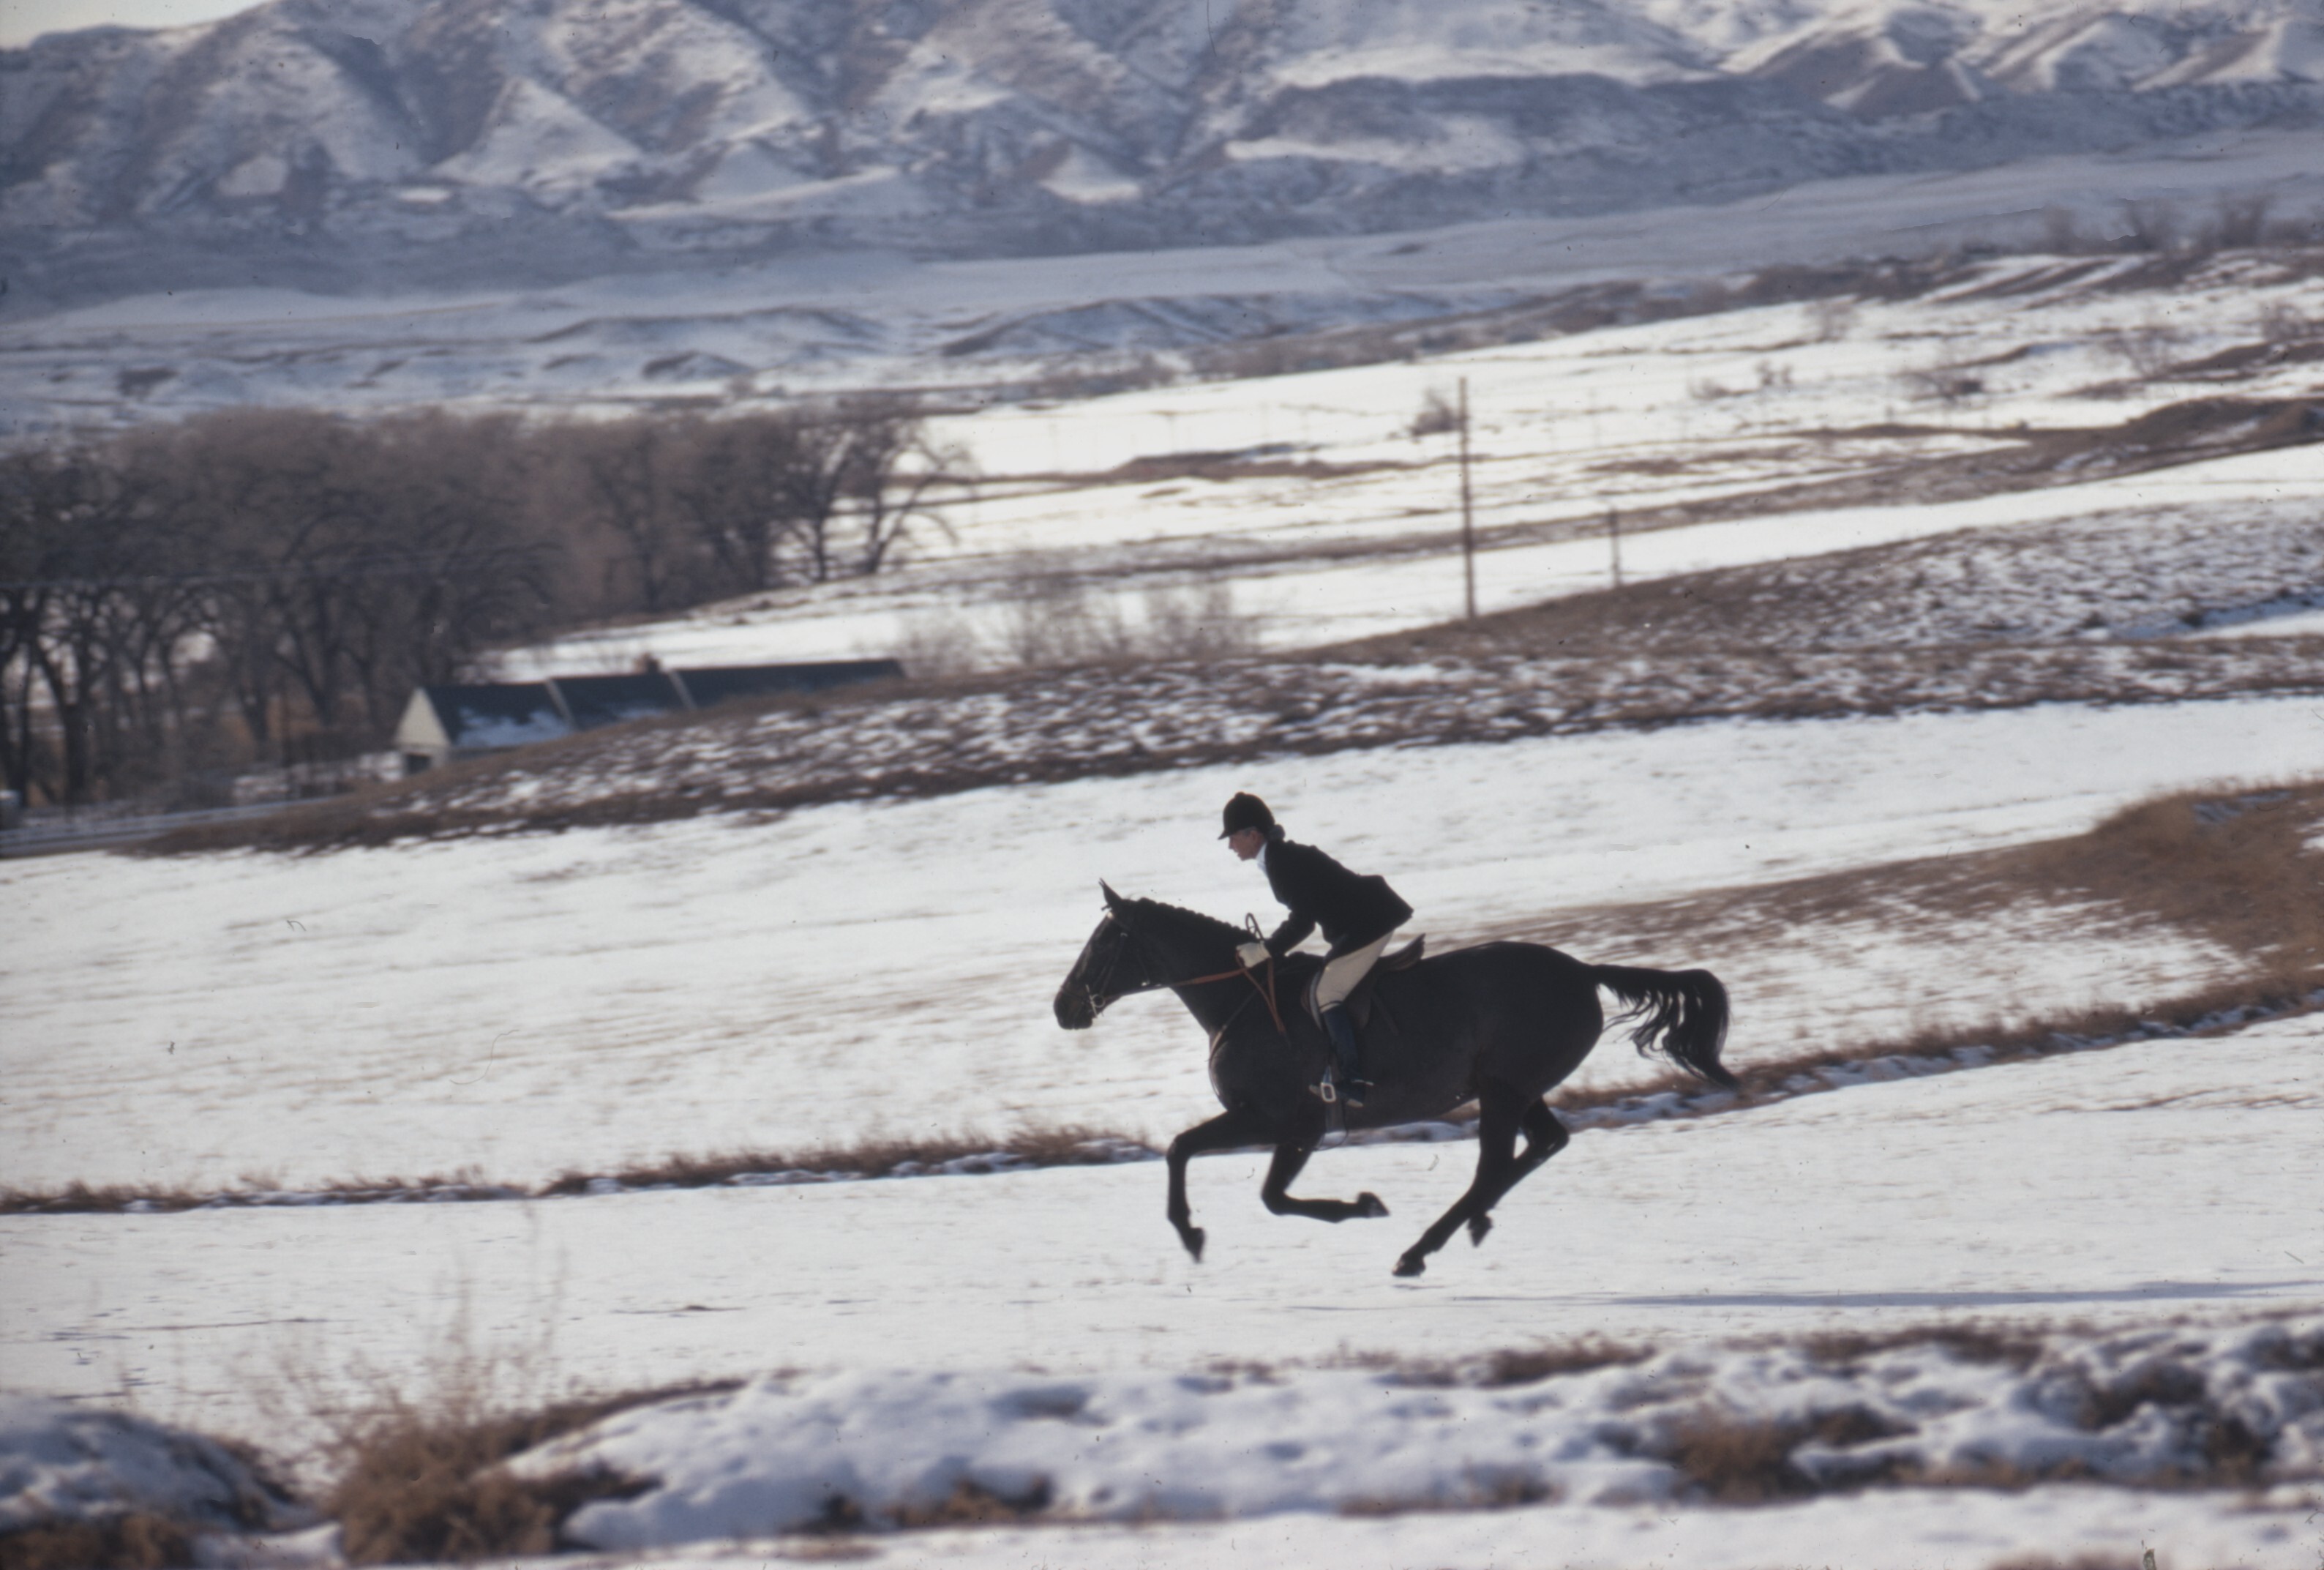 Энн Бонфой Тейлор на своей лошади, Колорадо, 1967. Фотограф Тони Фрисселл